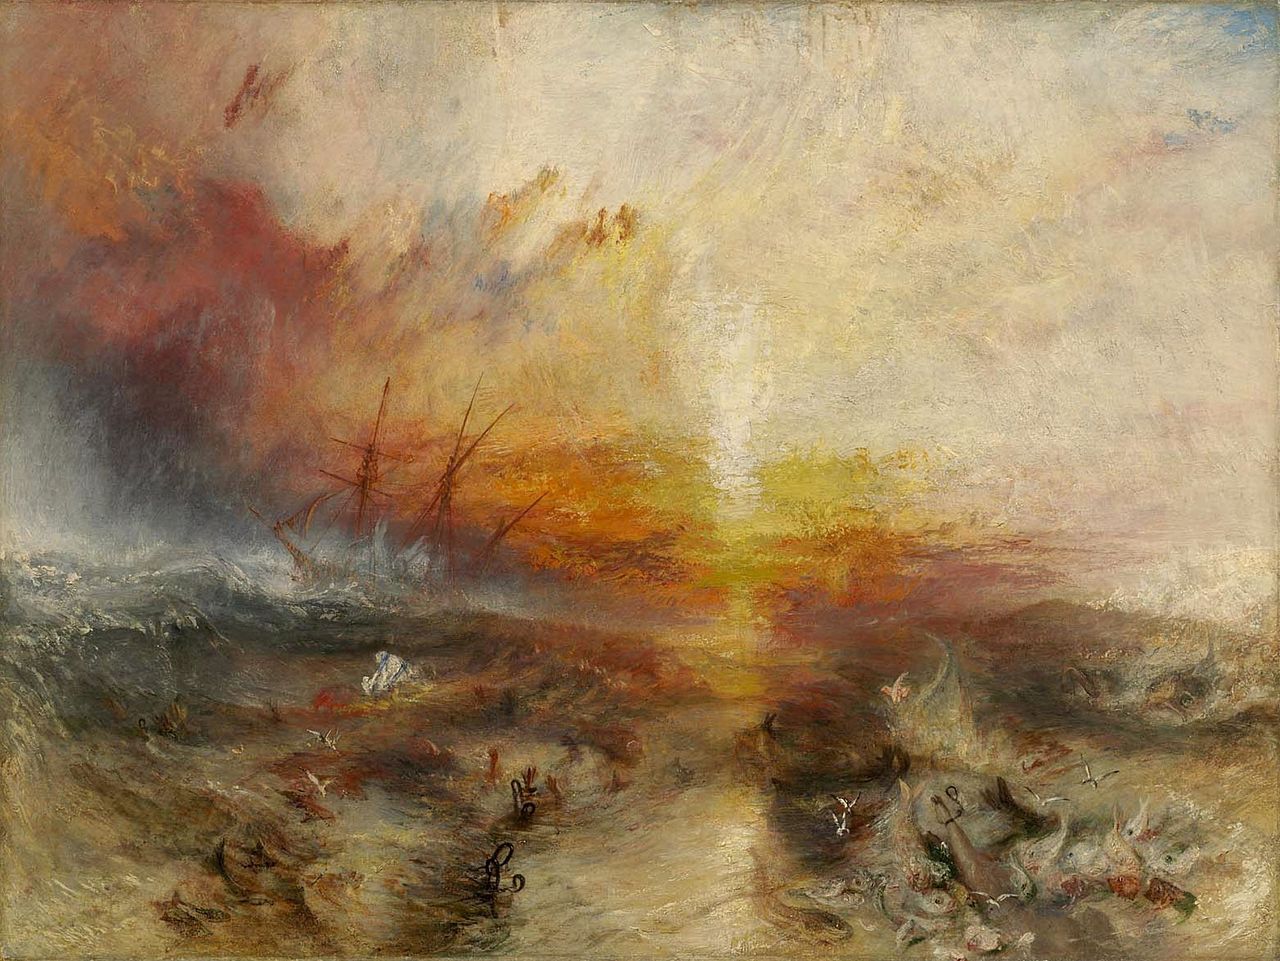 奴隸船(奴隸販子將死者和瀕死者扔下船) by Joseph Mallord William Turner - 1814 - 90.8 x 122.6 厘米 